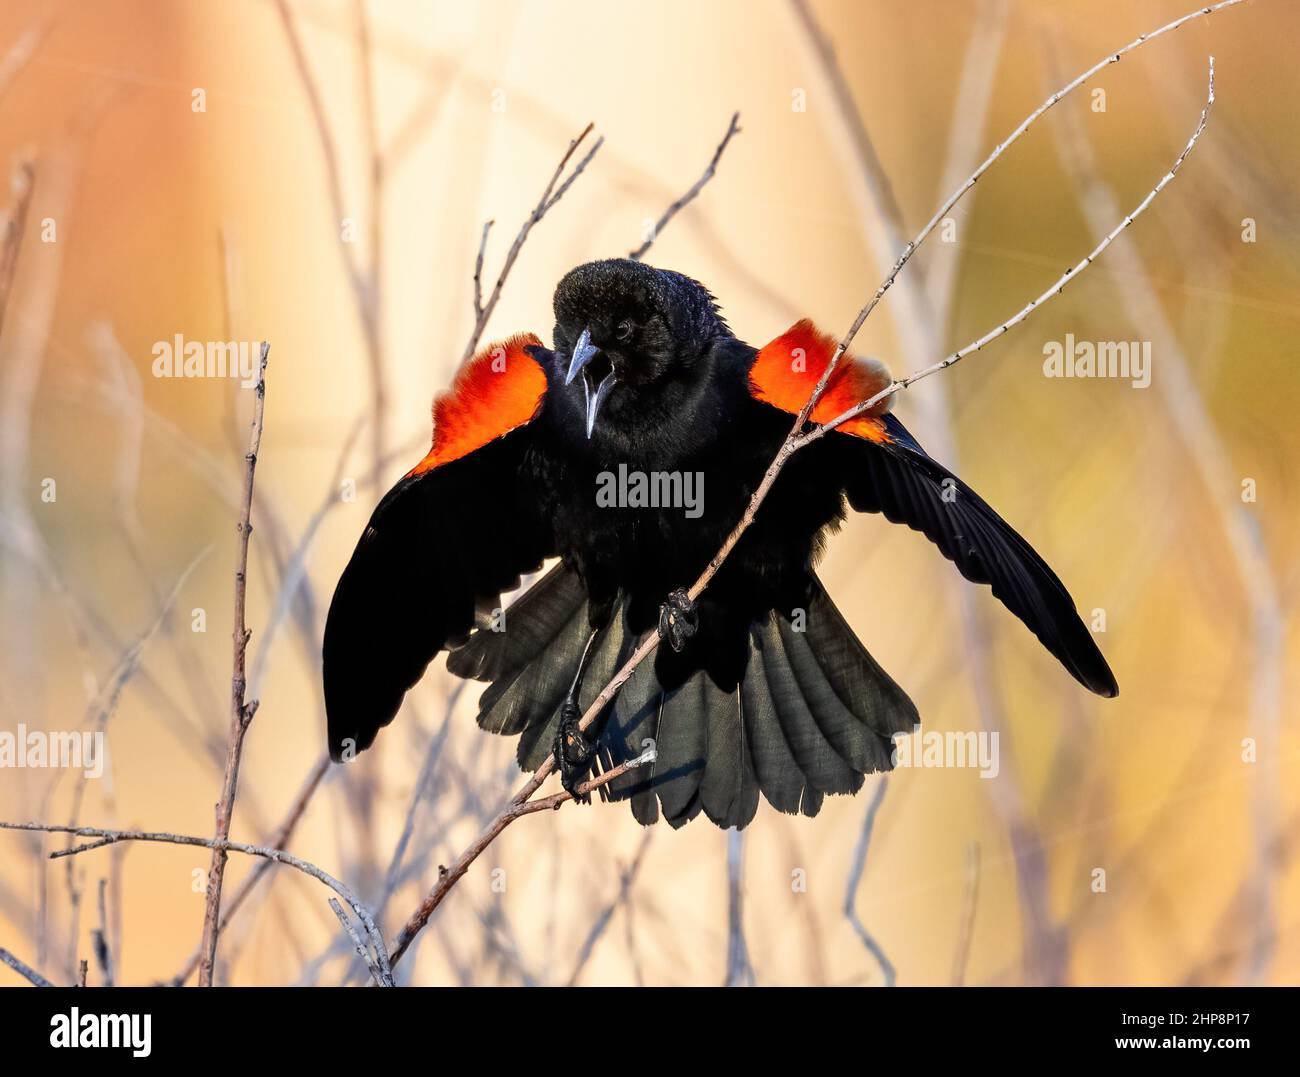 Un Blackbird ailé rouge avec des taches d'épaule colorées, appelant avec une queue fanée et des ailes ouvertes sur un fond jaune et doré. Banque D'Images